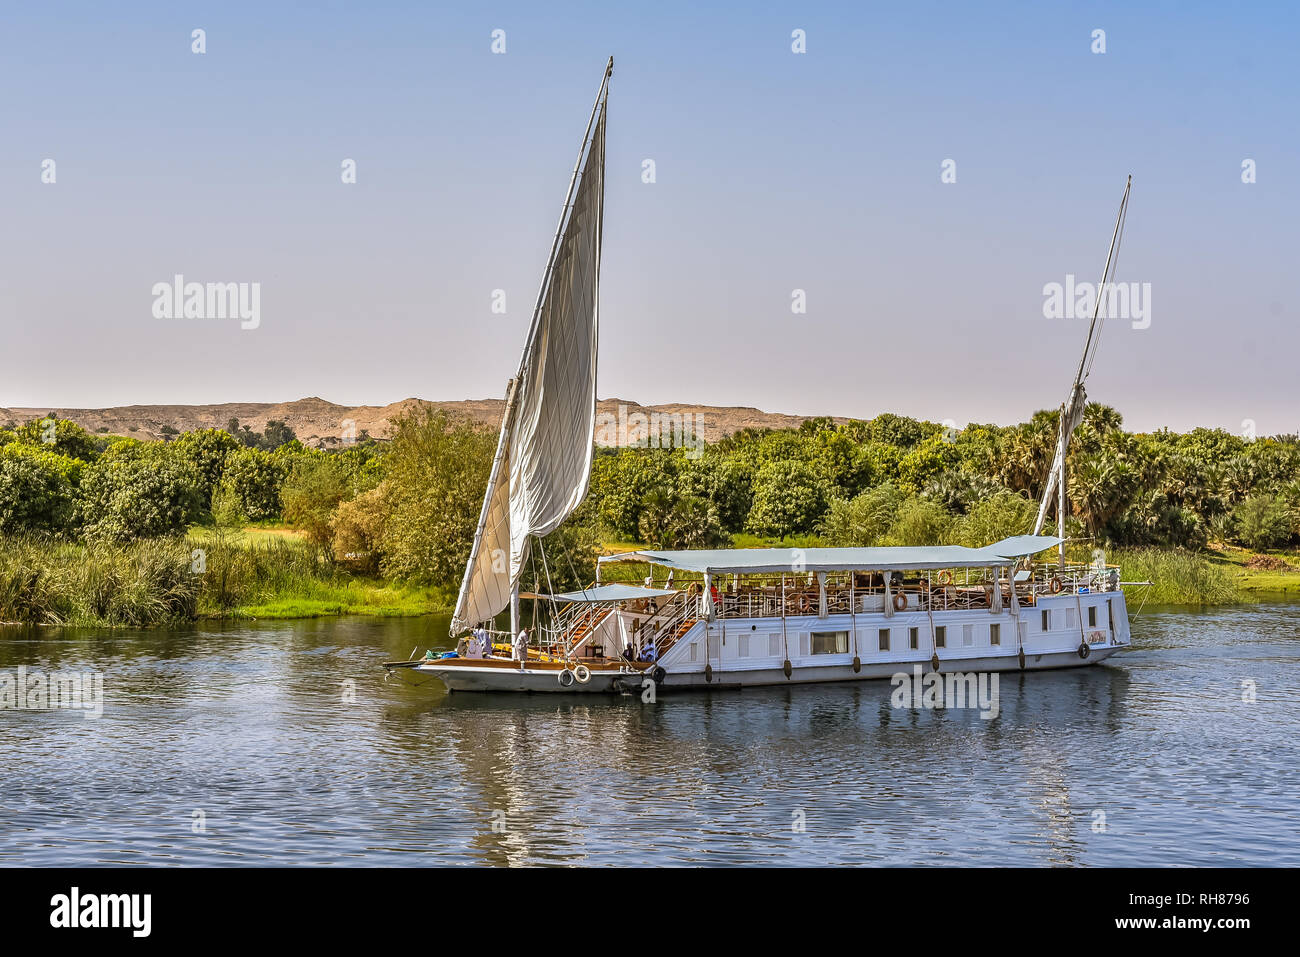 Navire à voile sur le Nil près de la côte verte et le désert, les touristes de détente sur le pont, le Nil, l'Egypte, le 23 octobre 2018 Banque D'Images